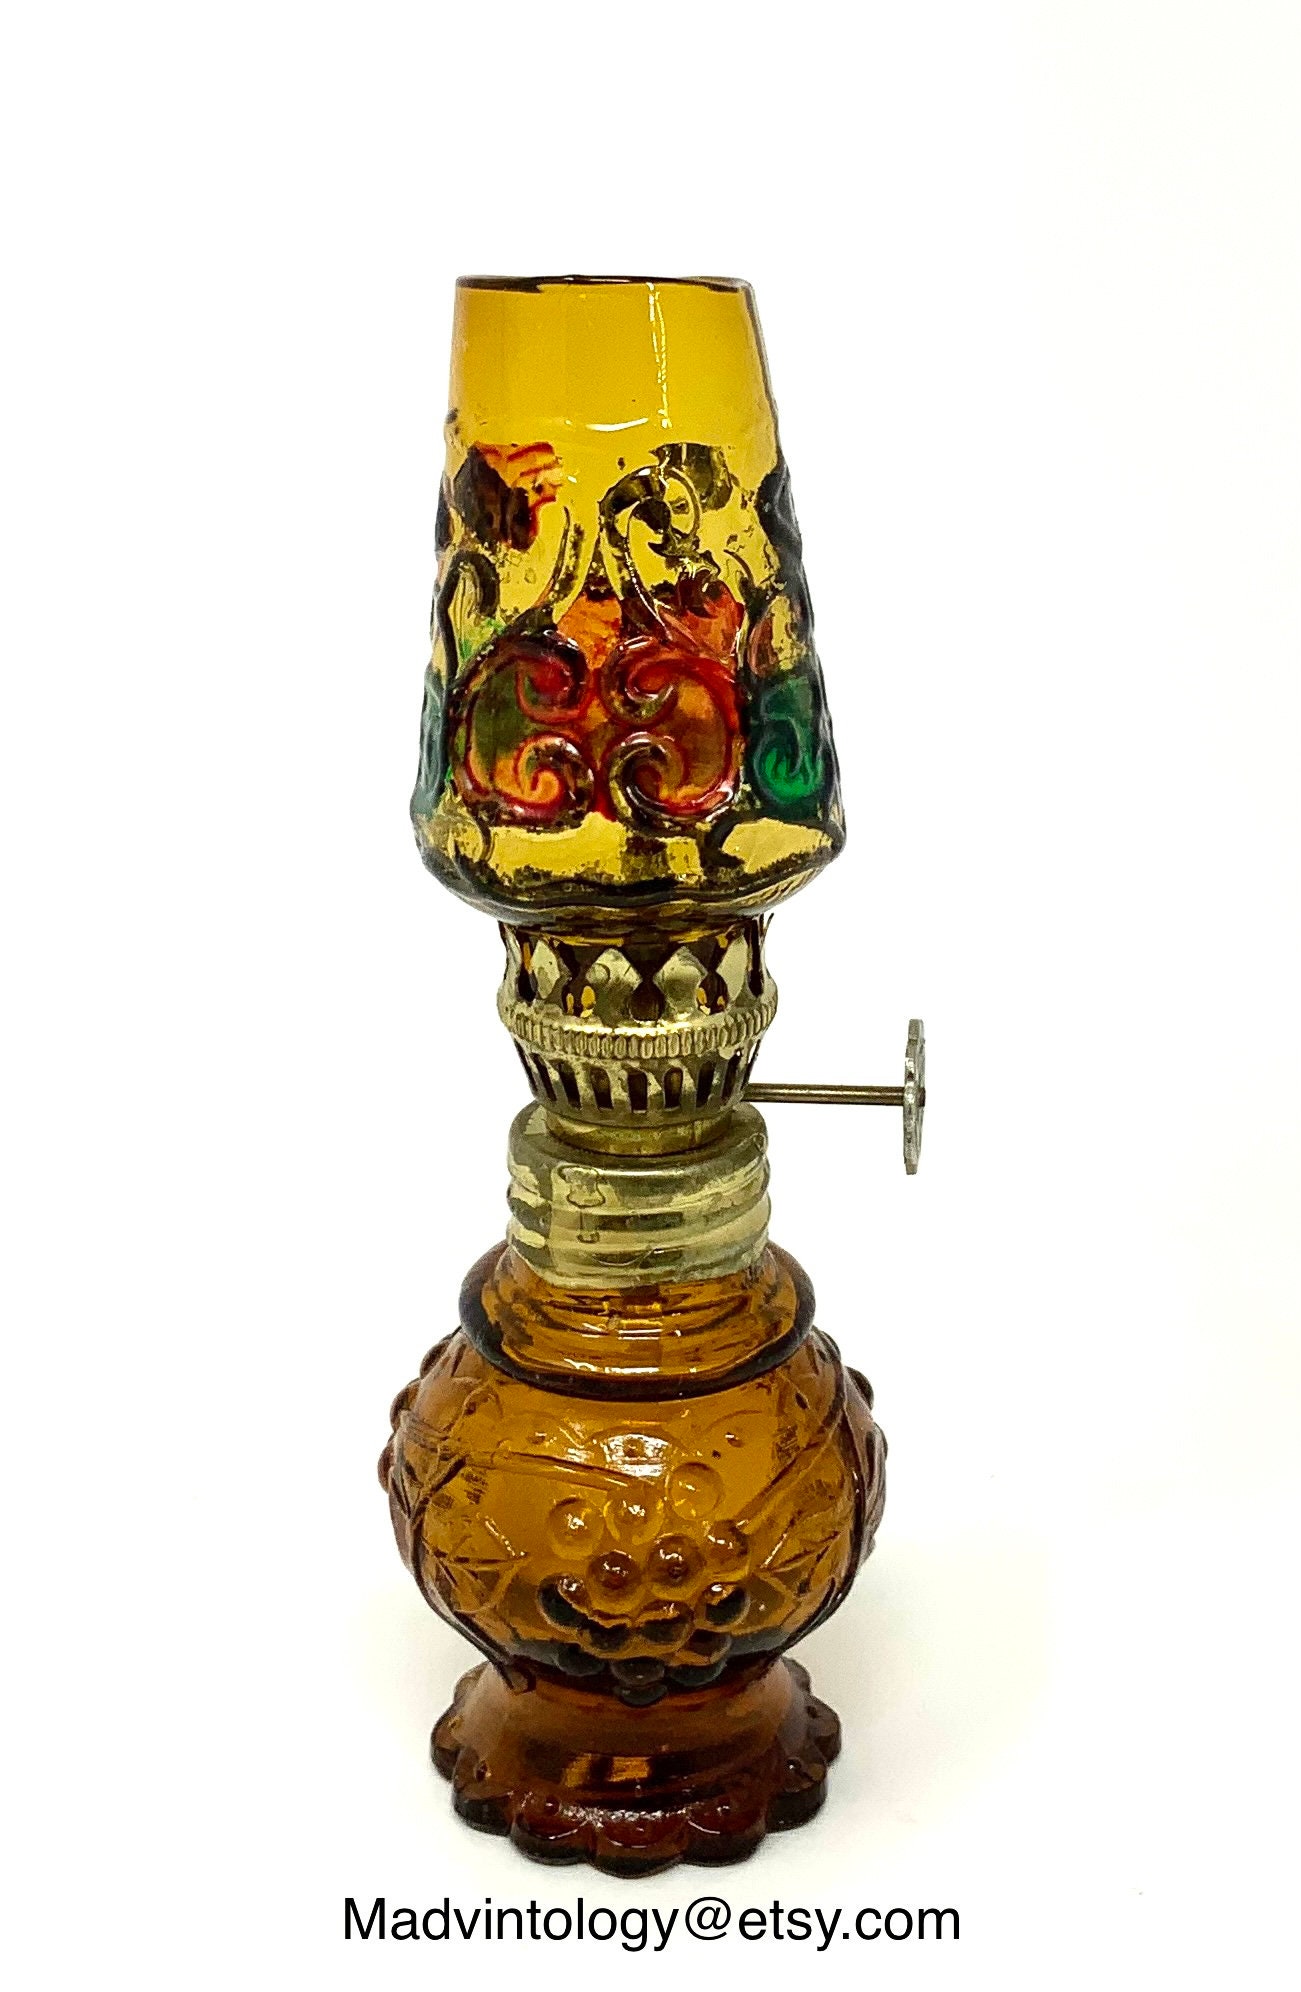 Antique Whale Oil Lamp / Primitive Lantern Wick Circa 1880s